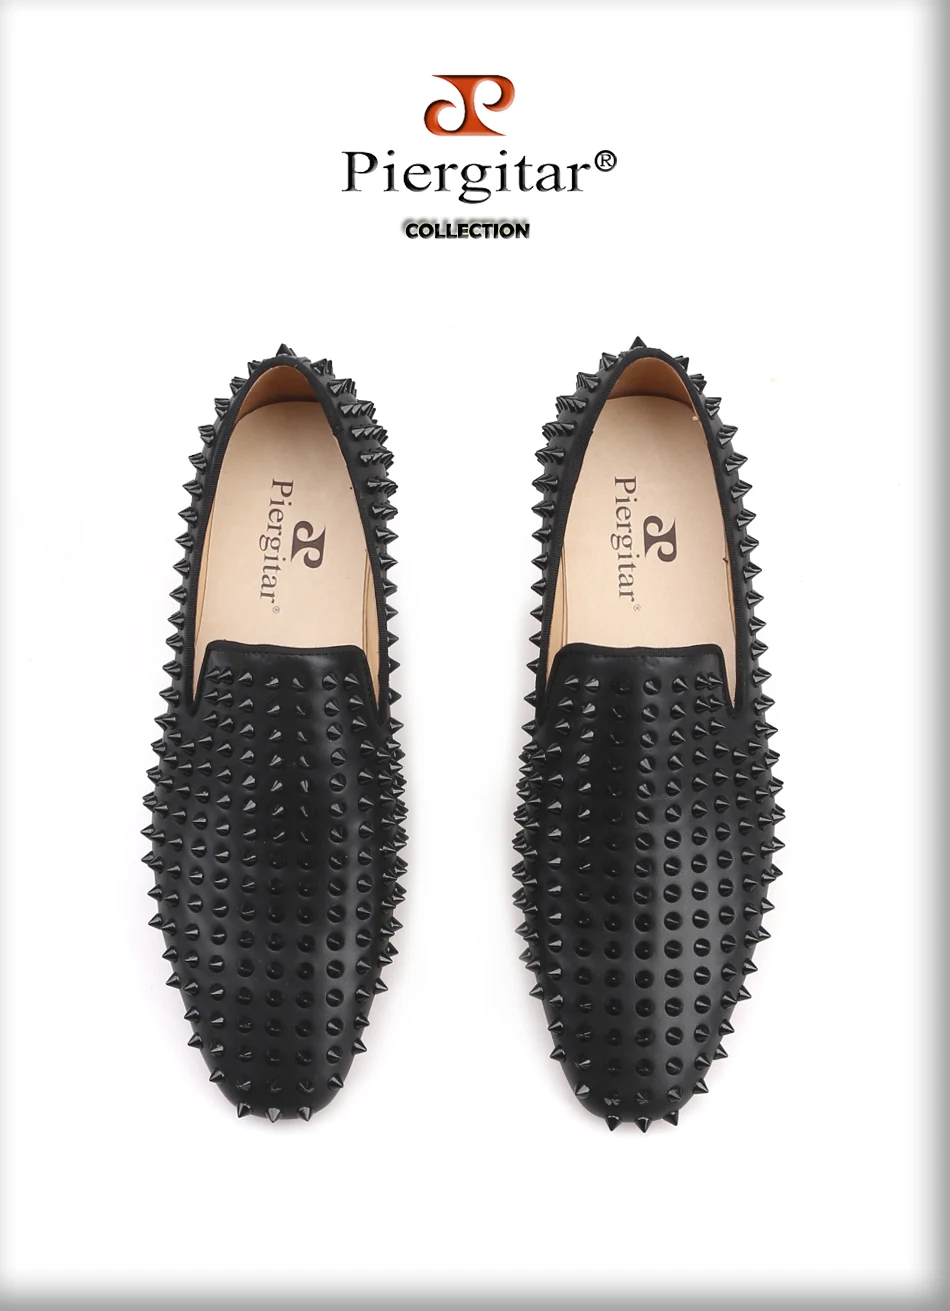 Piergitar/Новинка; Мужская обувь с шипами в виде одуванчиков; эта кожаная версия в тон черного цвета является шикарной основой как для работы, так и для работы